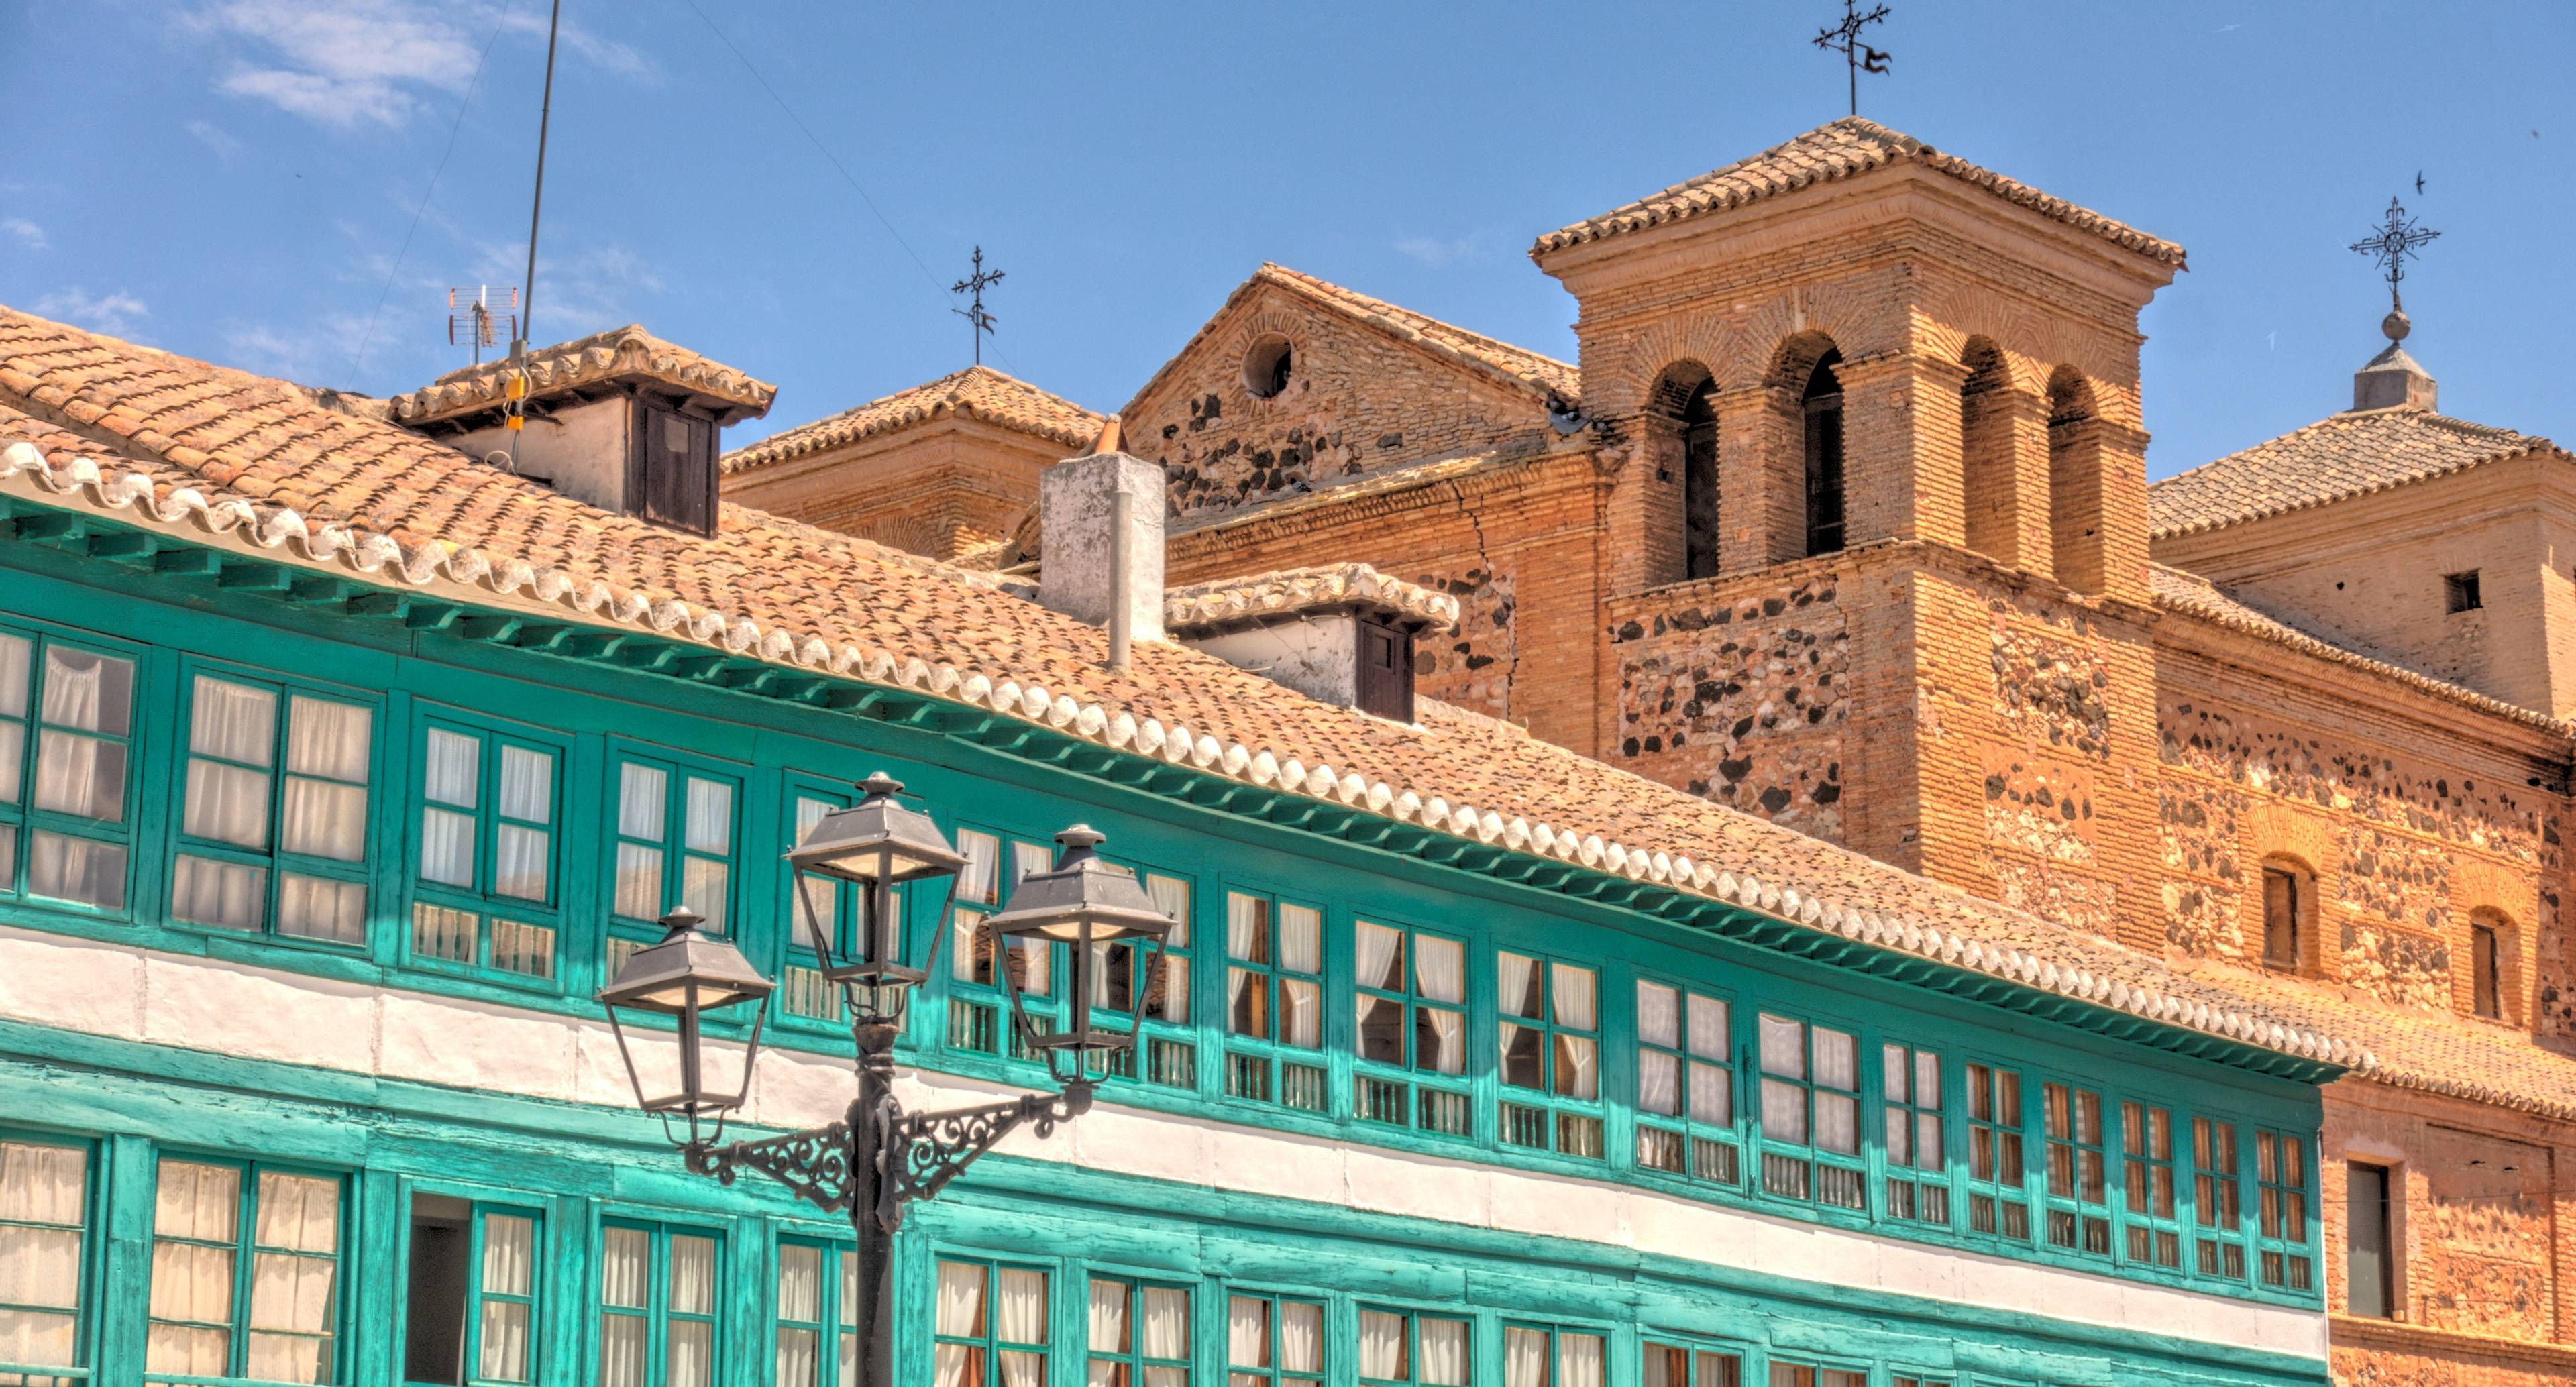 Villes traditionnelles de Chinchon et d'Aranjuez